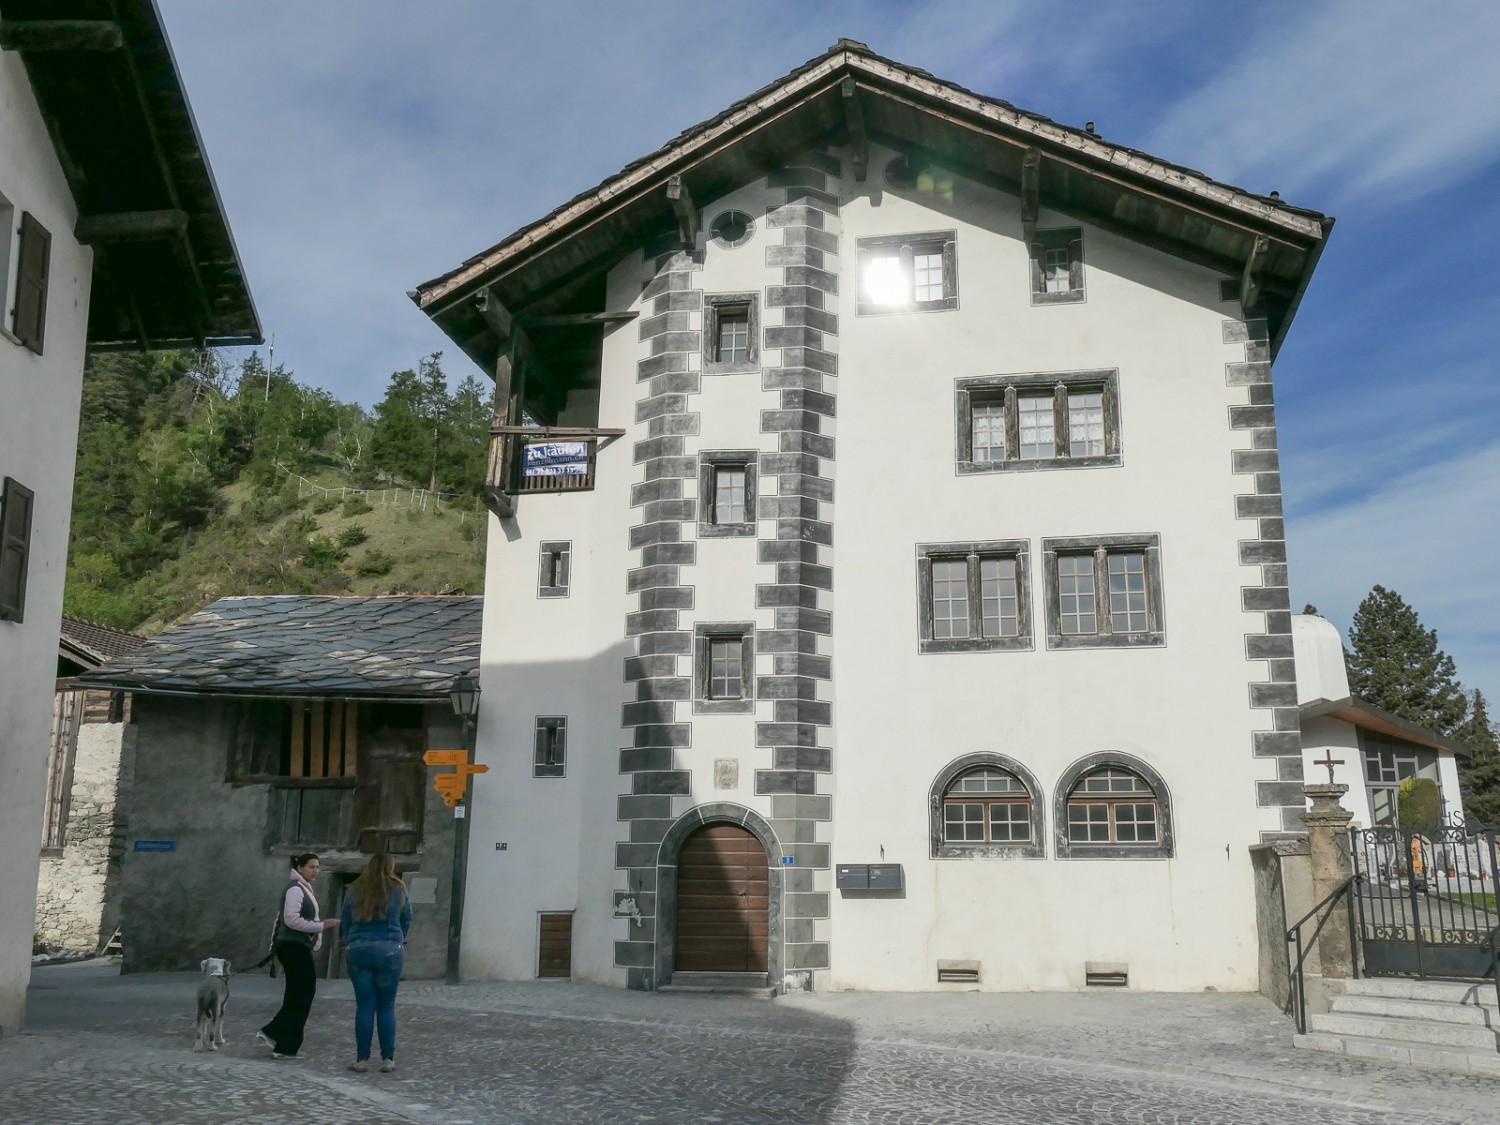 Splendide case patriziali nel nucleo storico del villaggio di Turtmann. Foto: Ulrike Marx